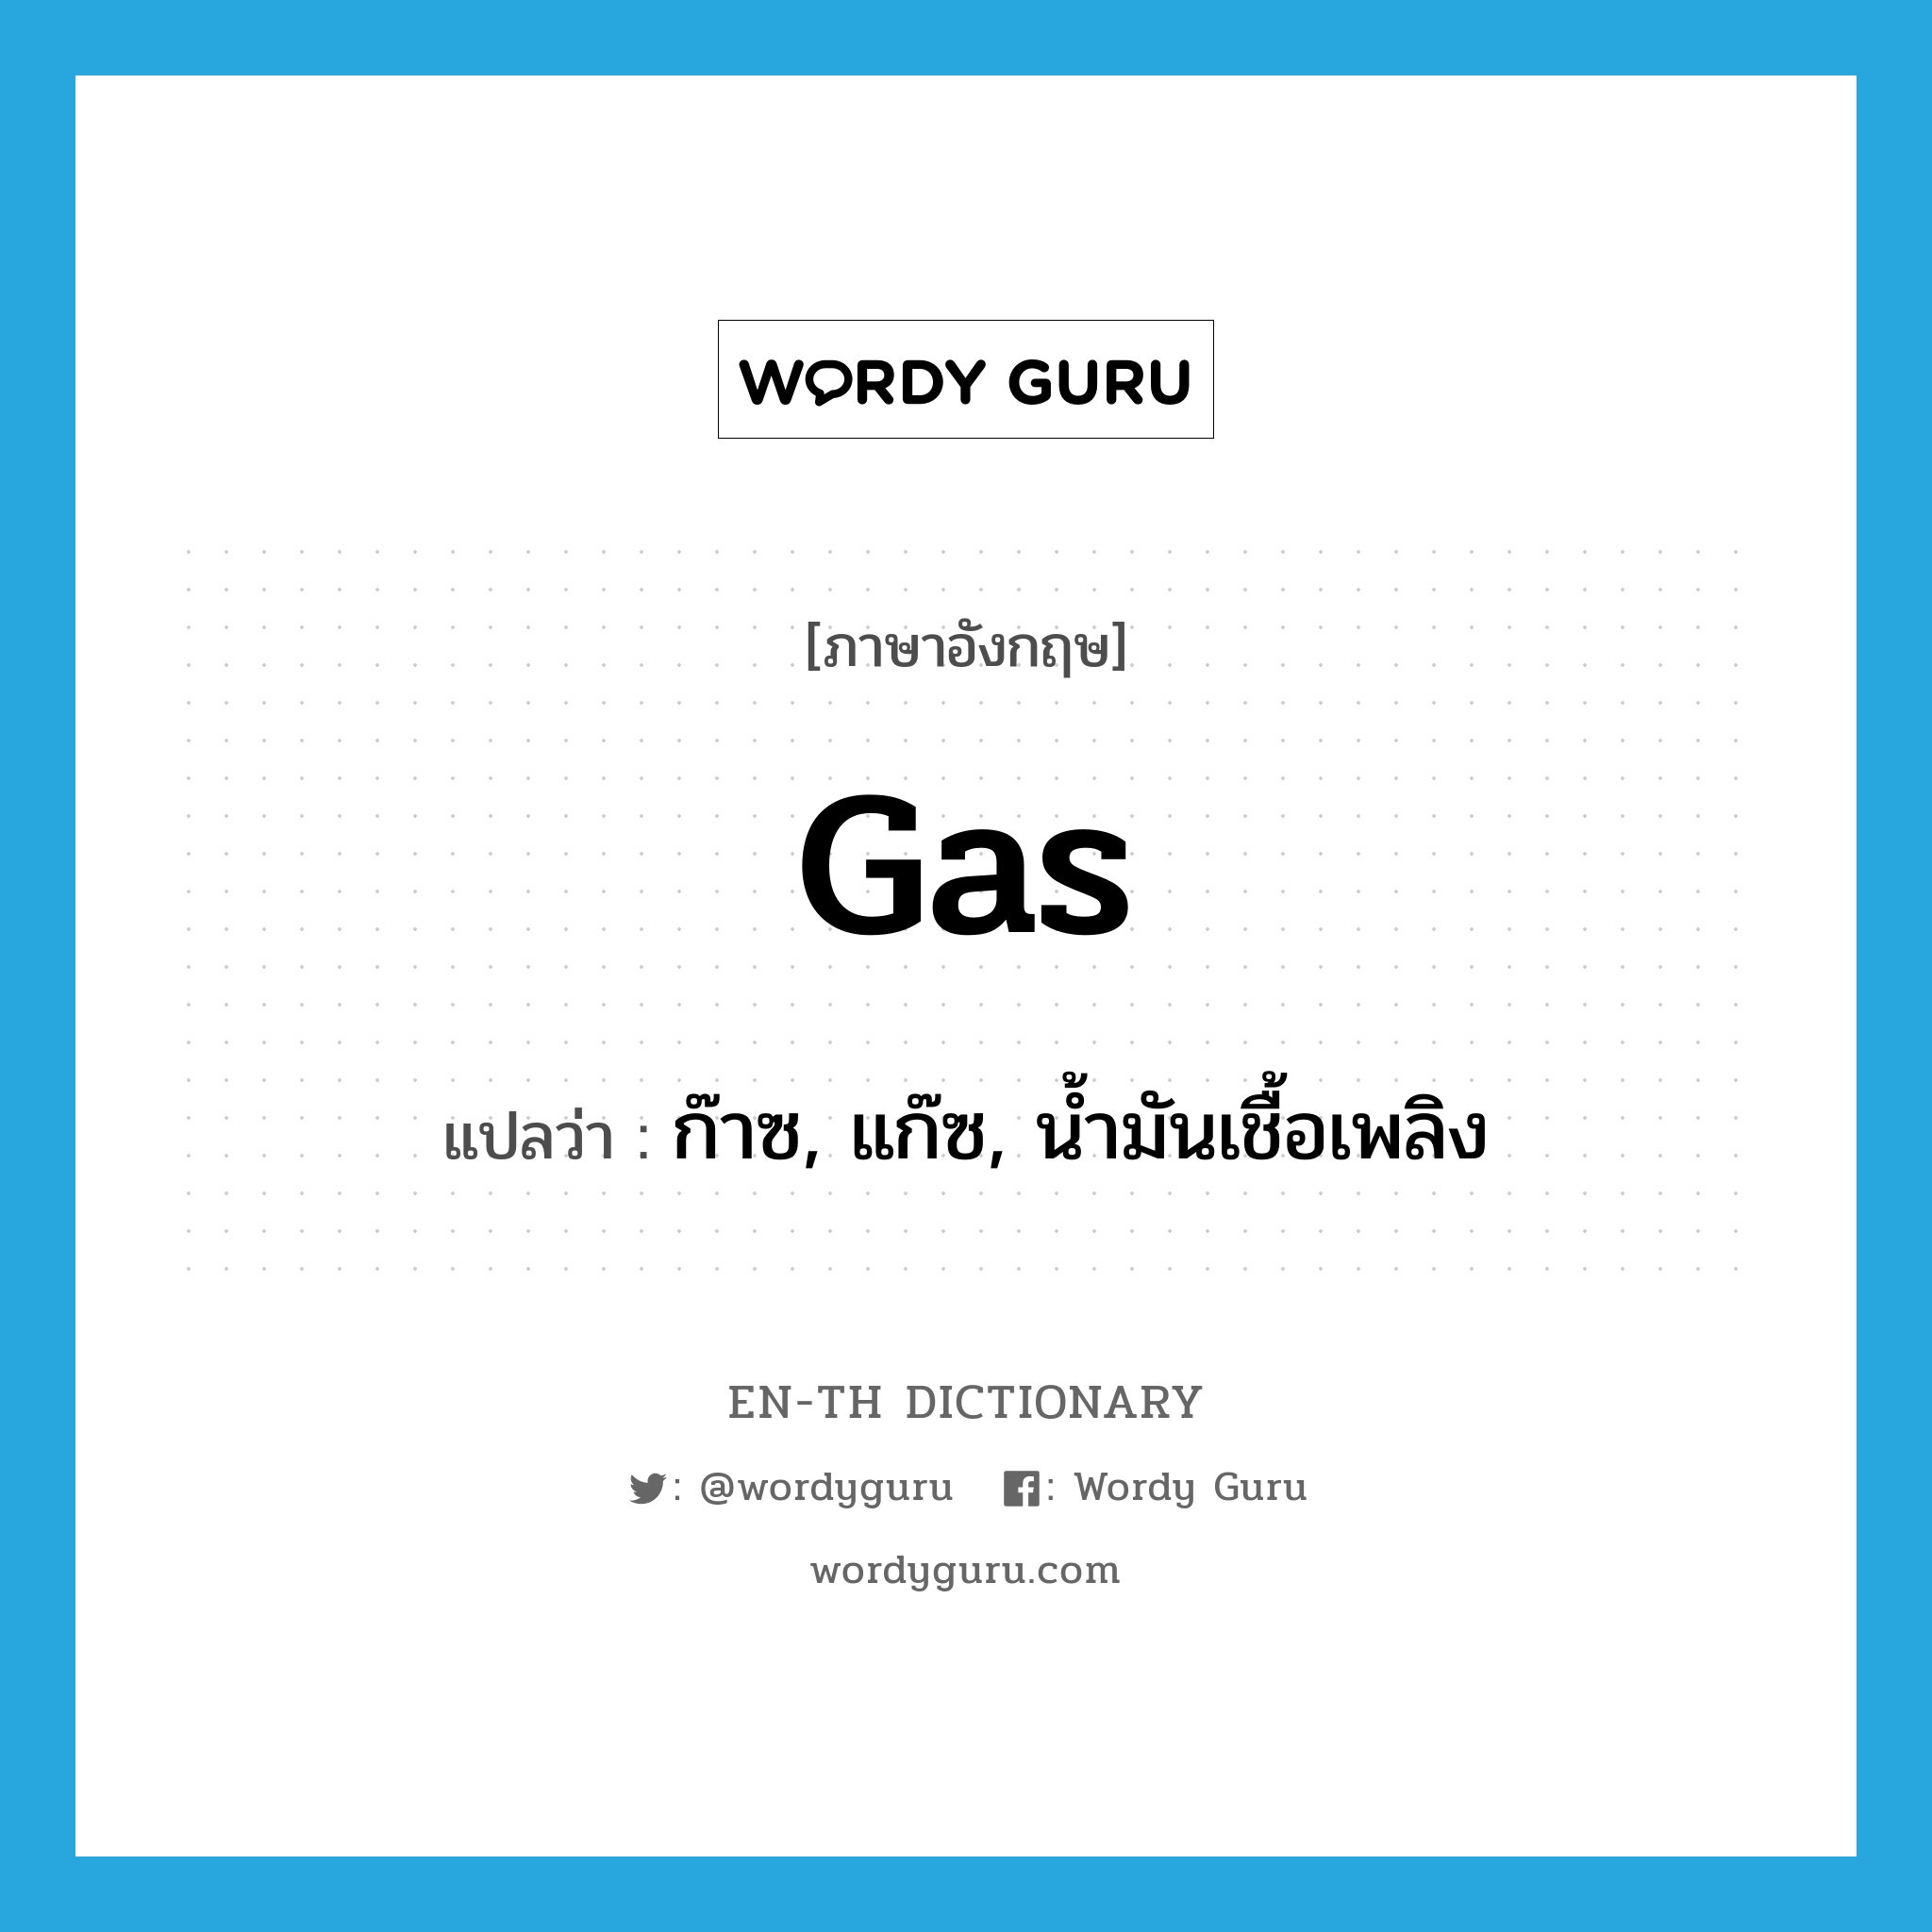 ก๊าซ, แก๊ซ, น้ำมันเชื้อเพลิง ภาษาอังกฤษ?, คำศัพท์ภาษาอังกฤษ ก๊าซ, แก๊ซ, น้ำมันเชื้อเพลิง แปลว่า gas ประเภท N หมวด N